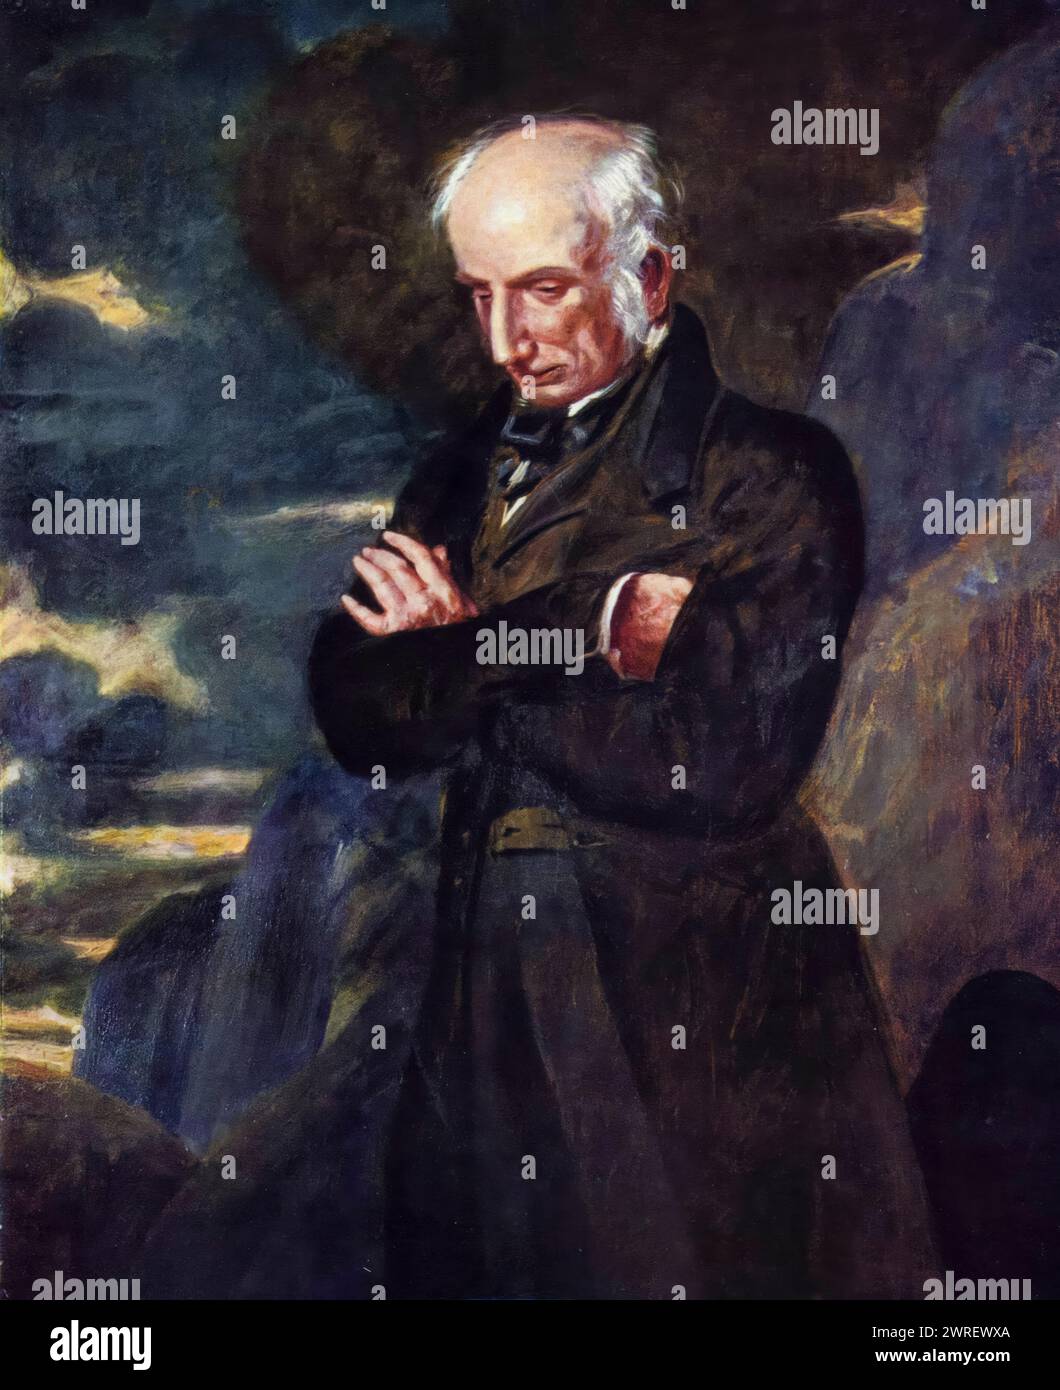 William Wordsworth (1770-1850), poète romantique anglais, portrait peint à l'huile sur toile par Benjamin Robert Haydon, 1842 Banque D'Images